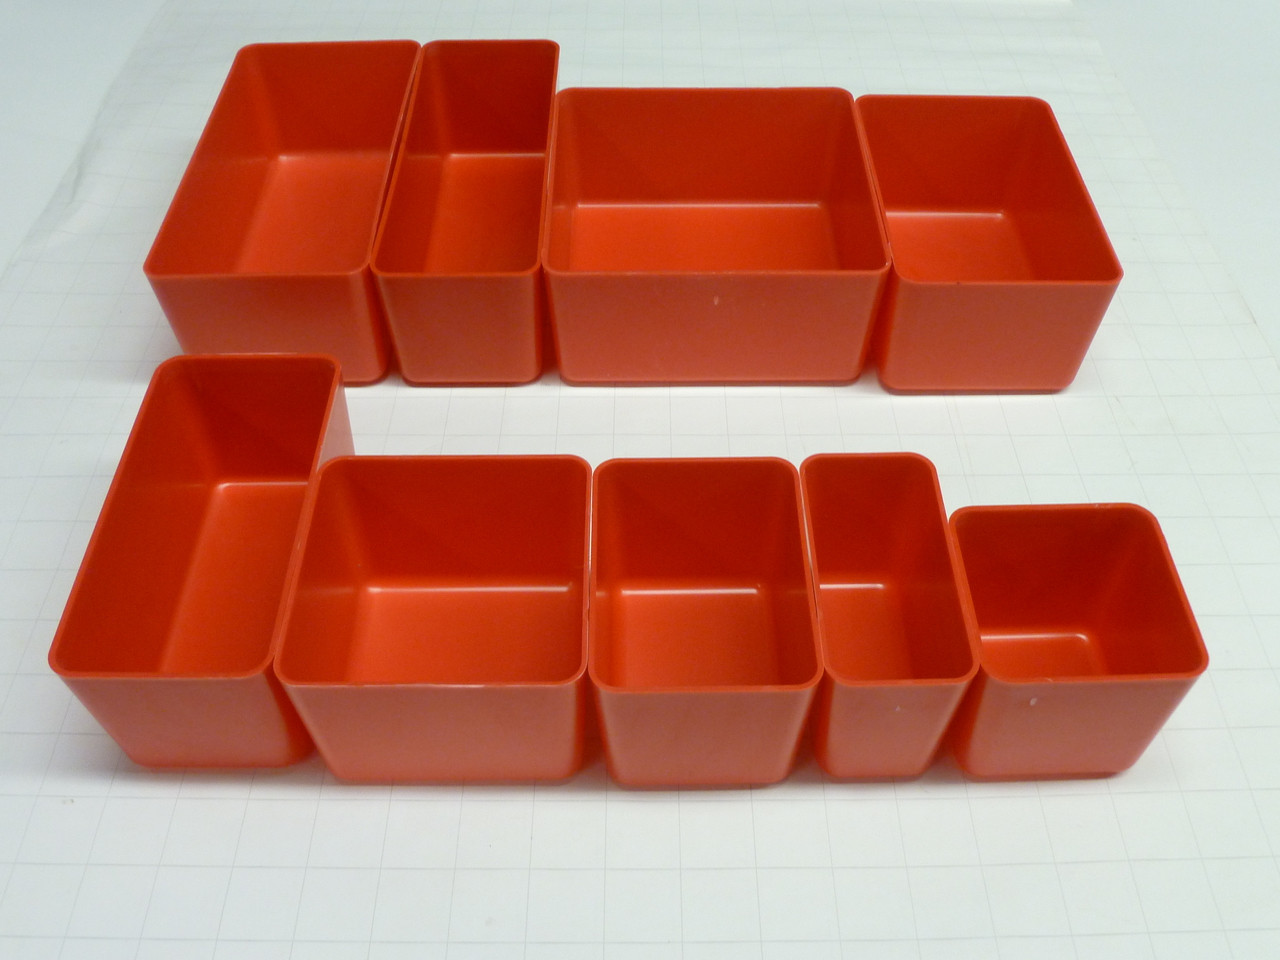 3 deep red plastic box assortment tool box organizers